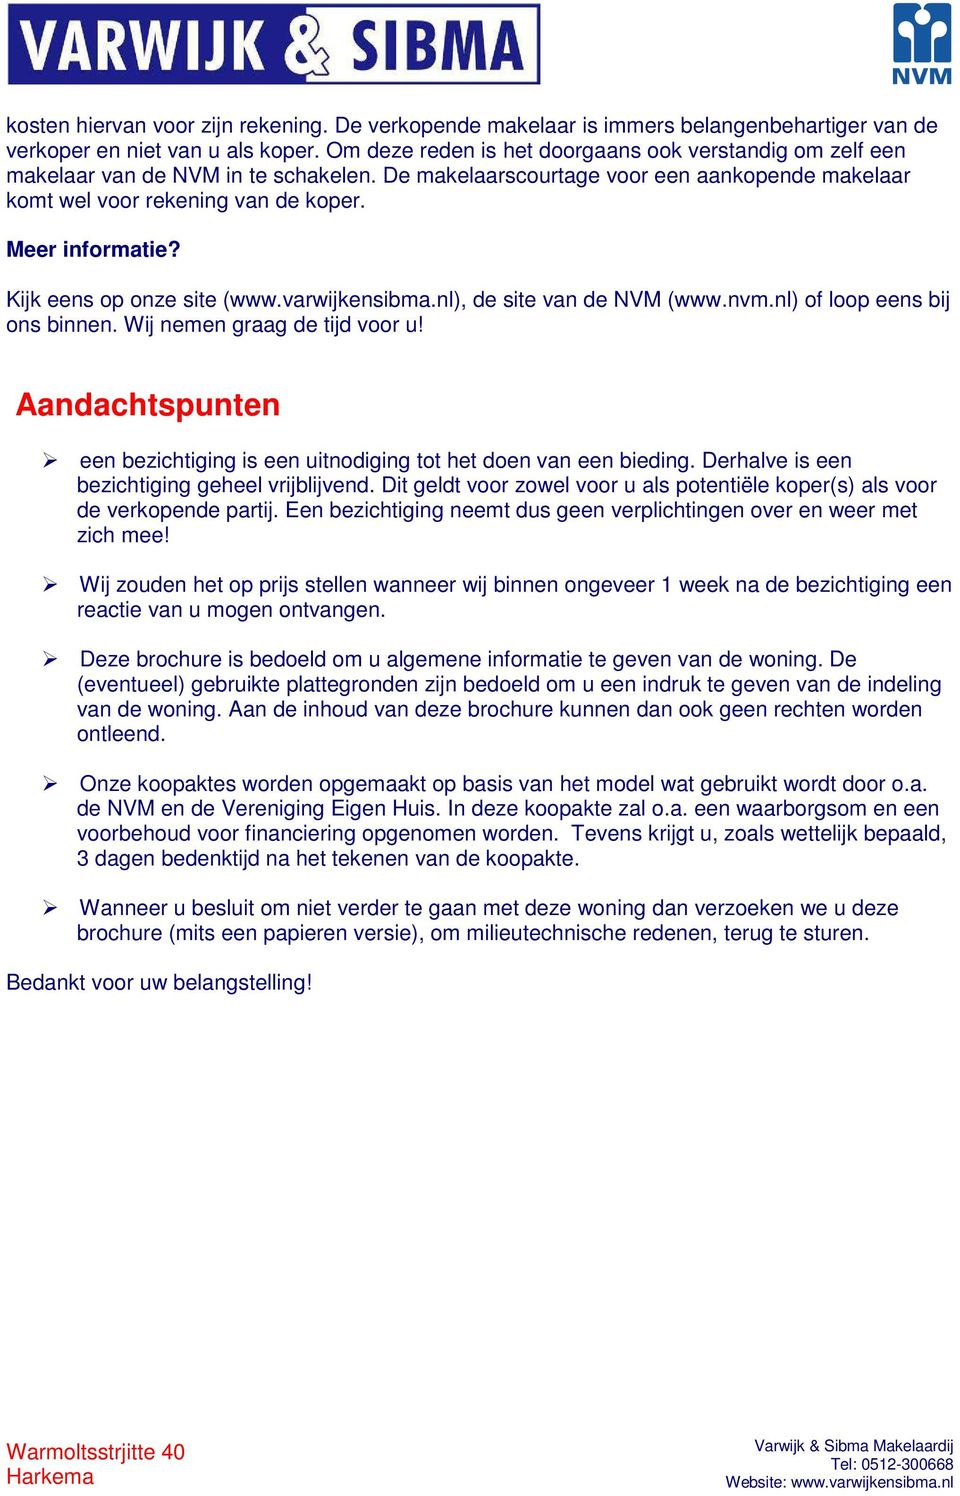 Kijk eens op onze site (www.varwijkensibma.nl), de site van de NVM (www.nvm.nl) of loop eens bij ons binnen. Wij nemen graag de tijd voor u!